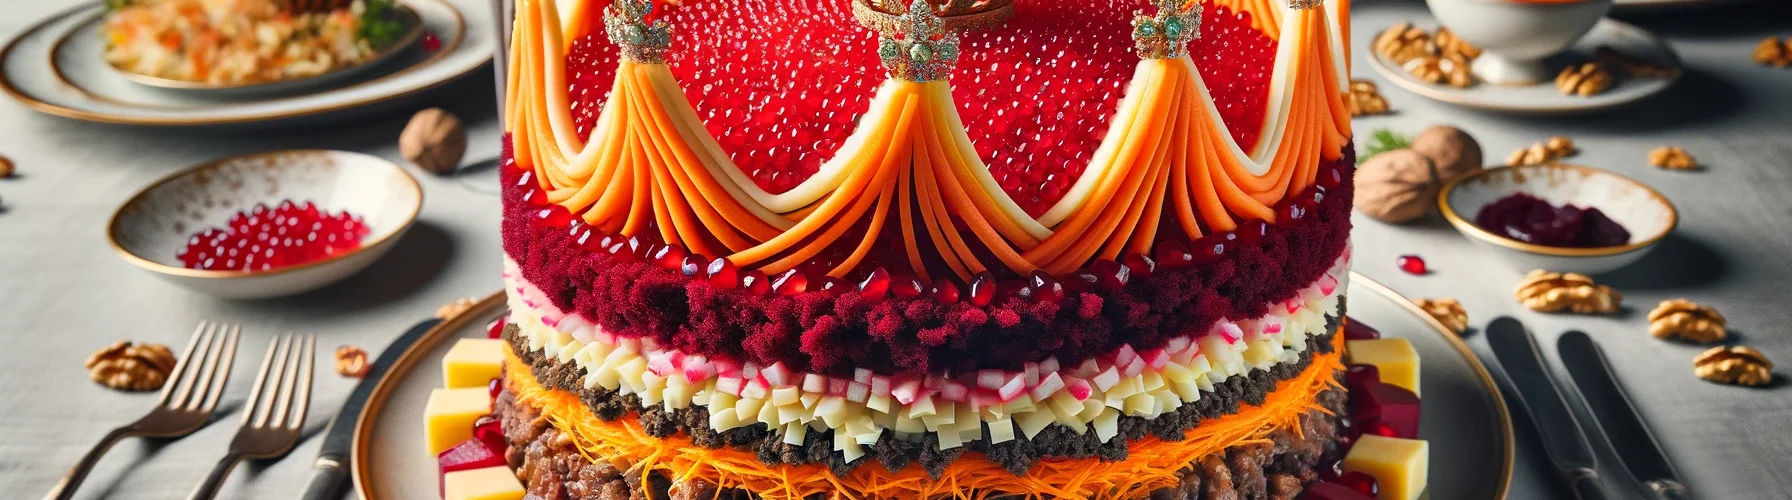 Салат Корона на праздничном столе